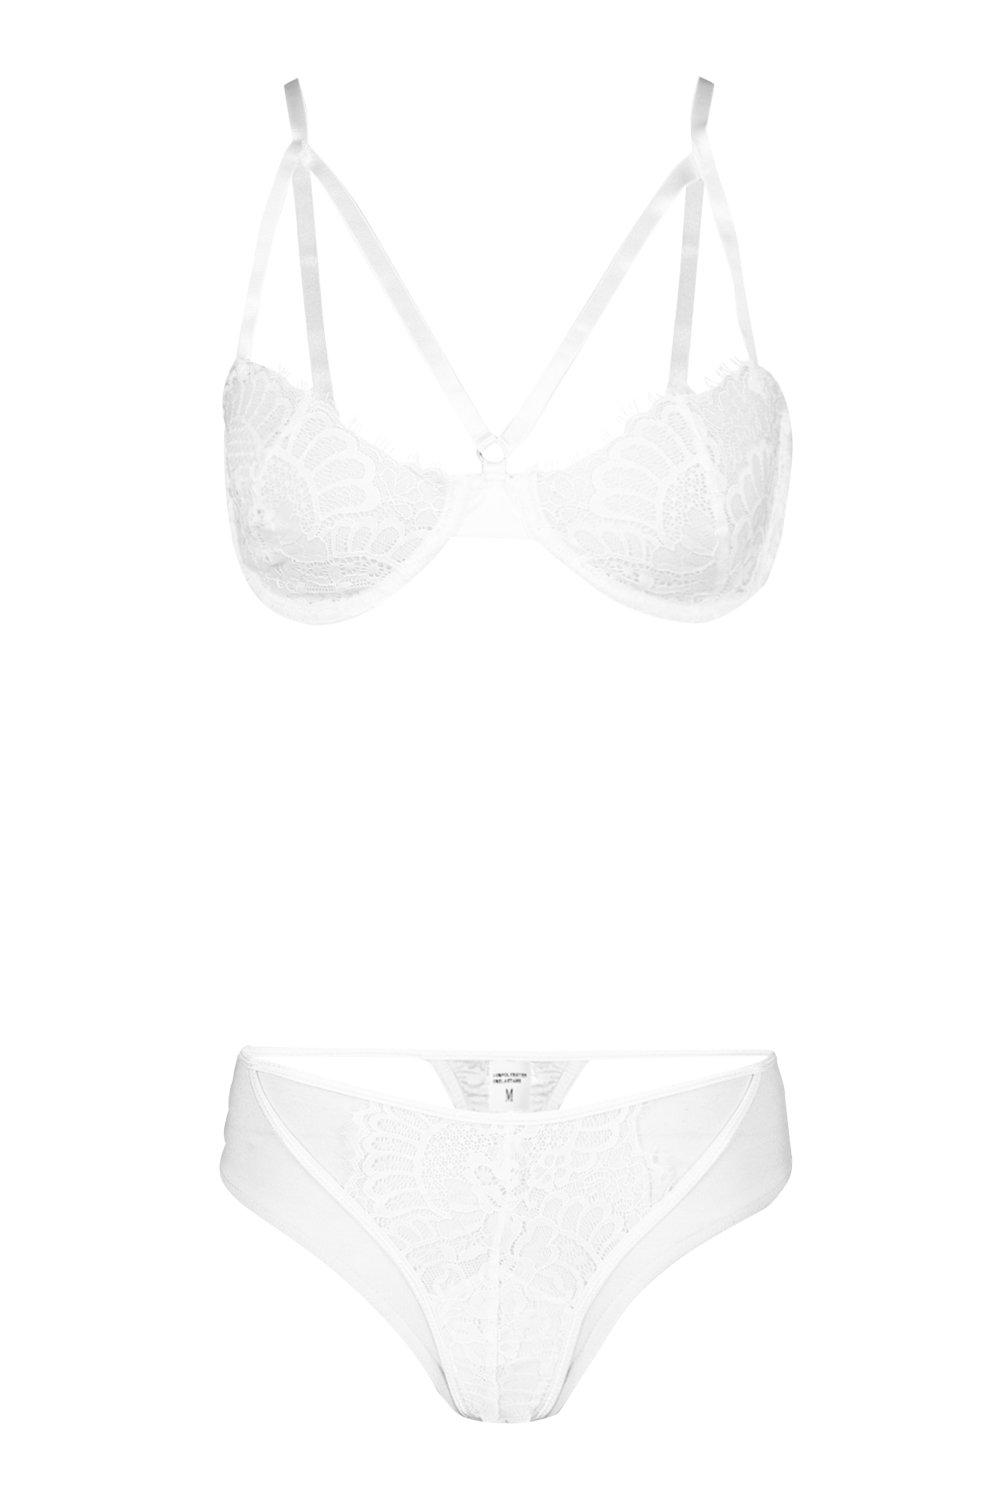 Eyelet Lace Cutout Bra in White  Cutout Bralette - Women's Bras – Negative  Underwear